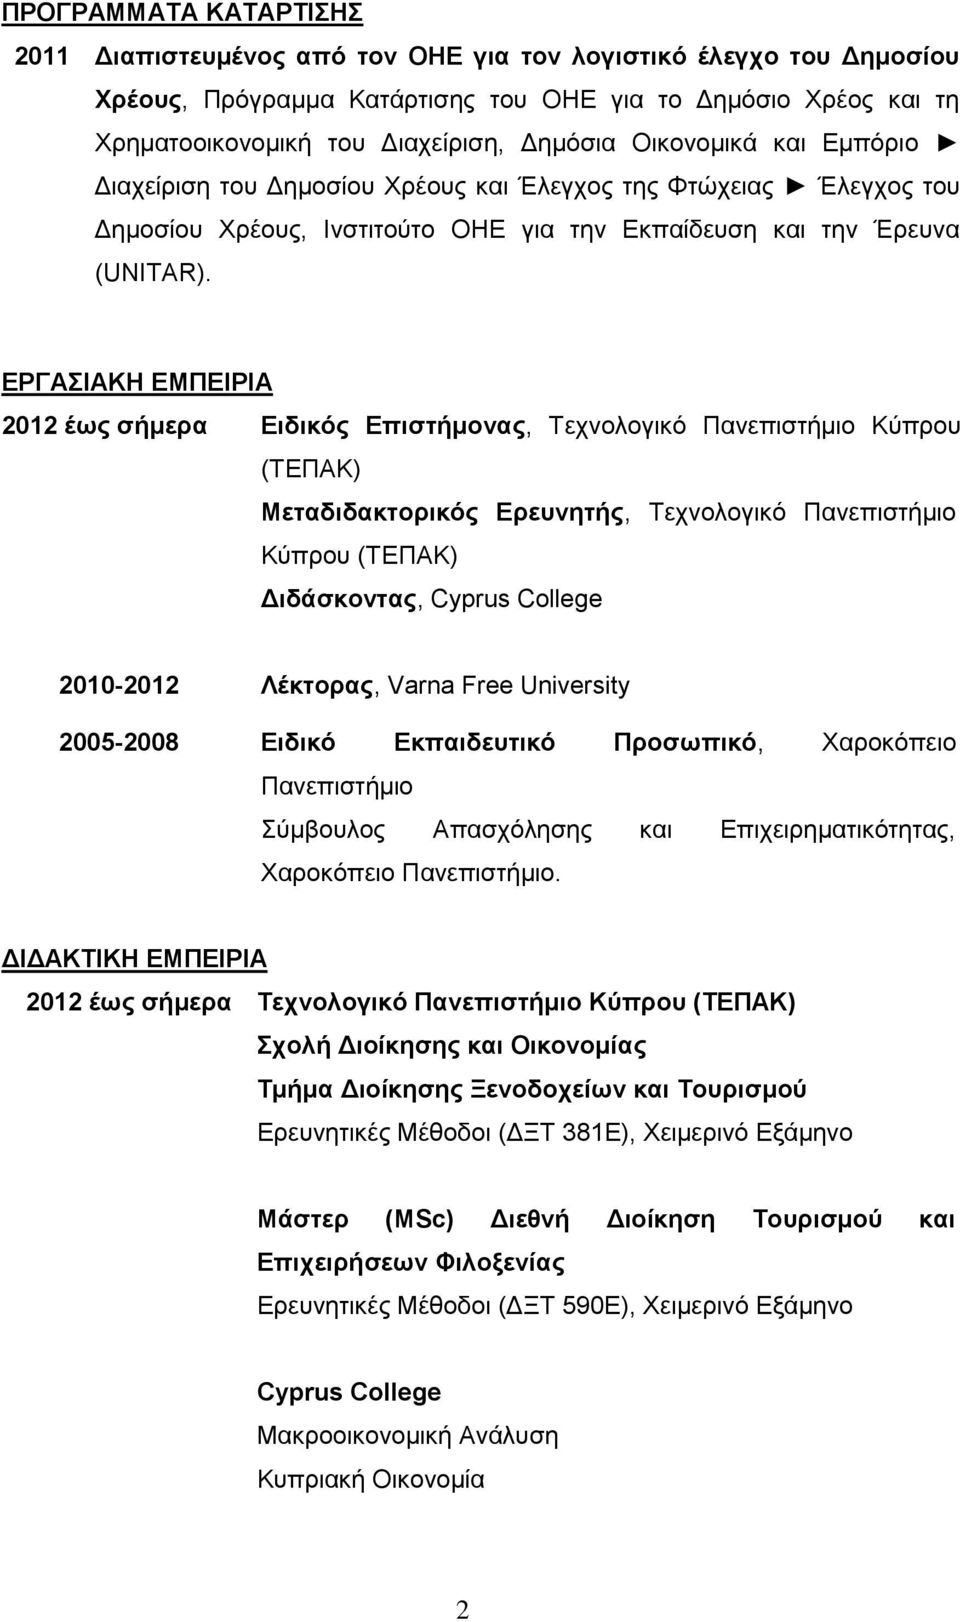 ΕΡΓΑΣΙΑΚΗ ΕΜΠΕΙΡΙΑ 2012 έως σήμερα Ειδικός Επιστήμονας, Τεχνολογικό Πανεπιστήμιο Κύπρου (ΤΕΠΑΚ) Μεταδιδακτορικός Ερευνητής, Τεχνολογικό Πανεπιστήμιο Κύπρου (ΤΕΠΑΚ) Διδάσκοντας, Cyprus College